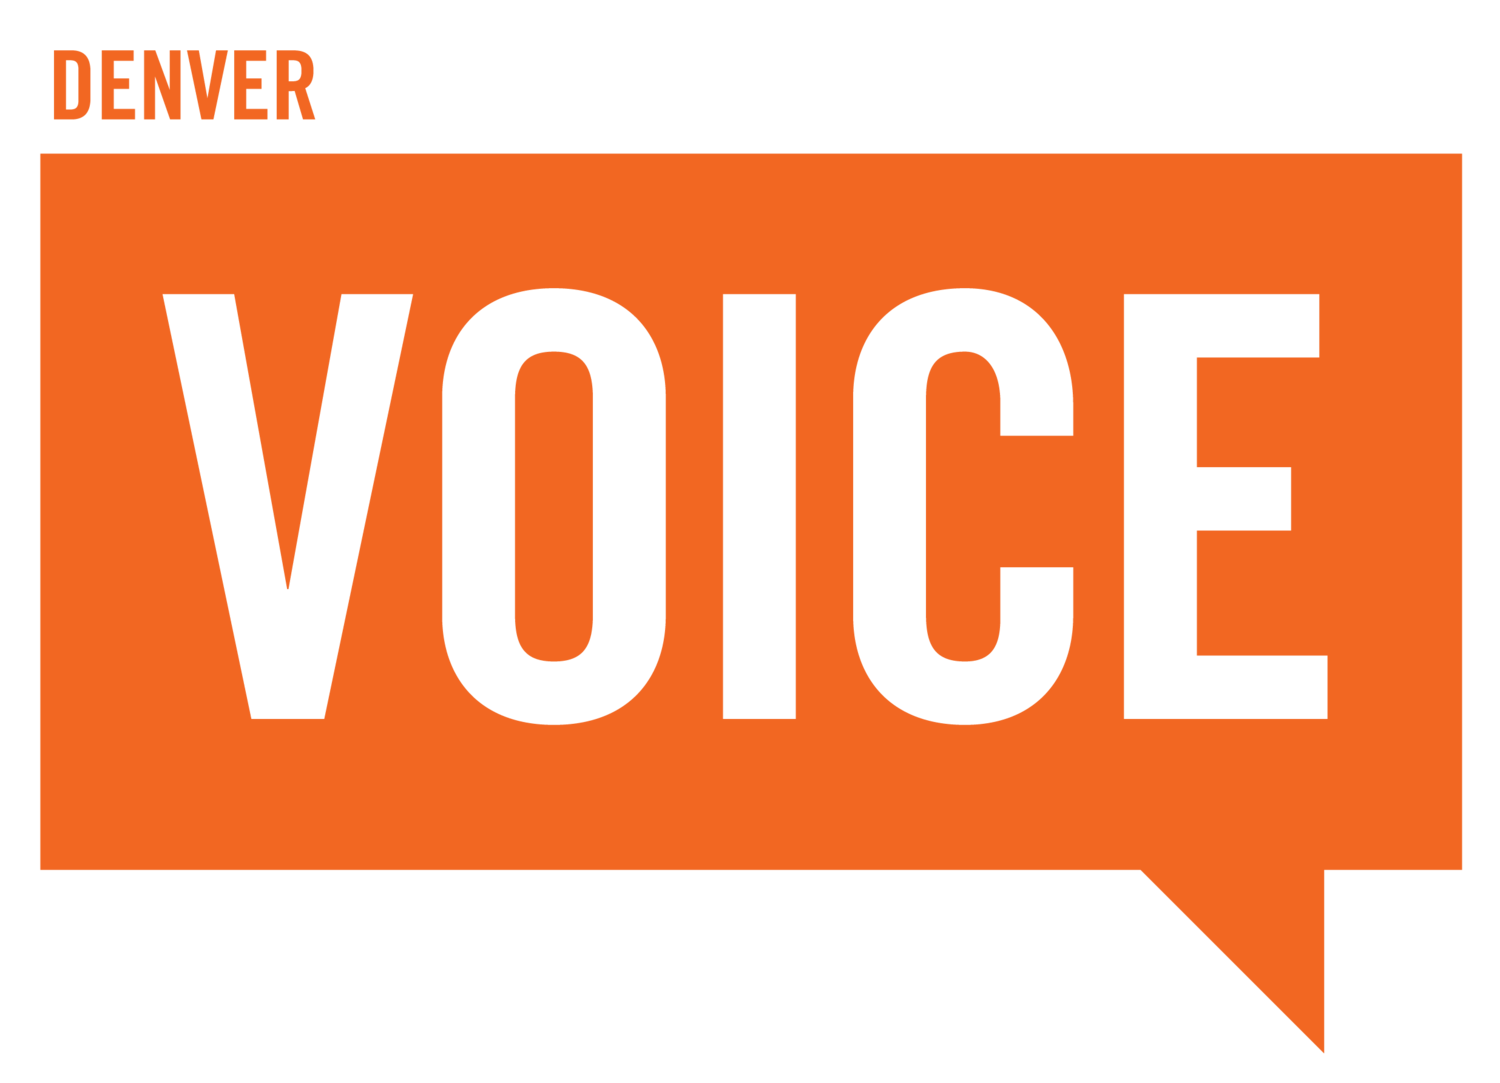 The Denver VOICE